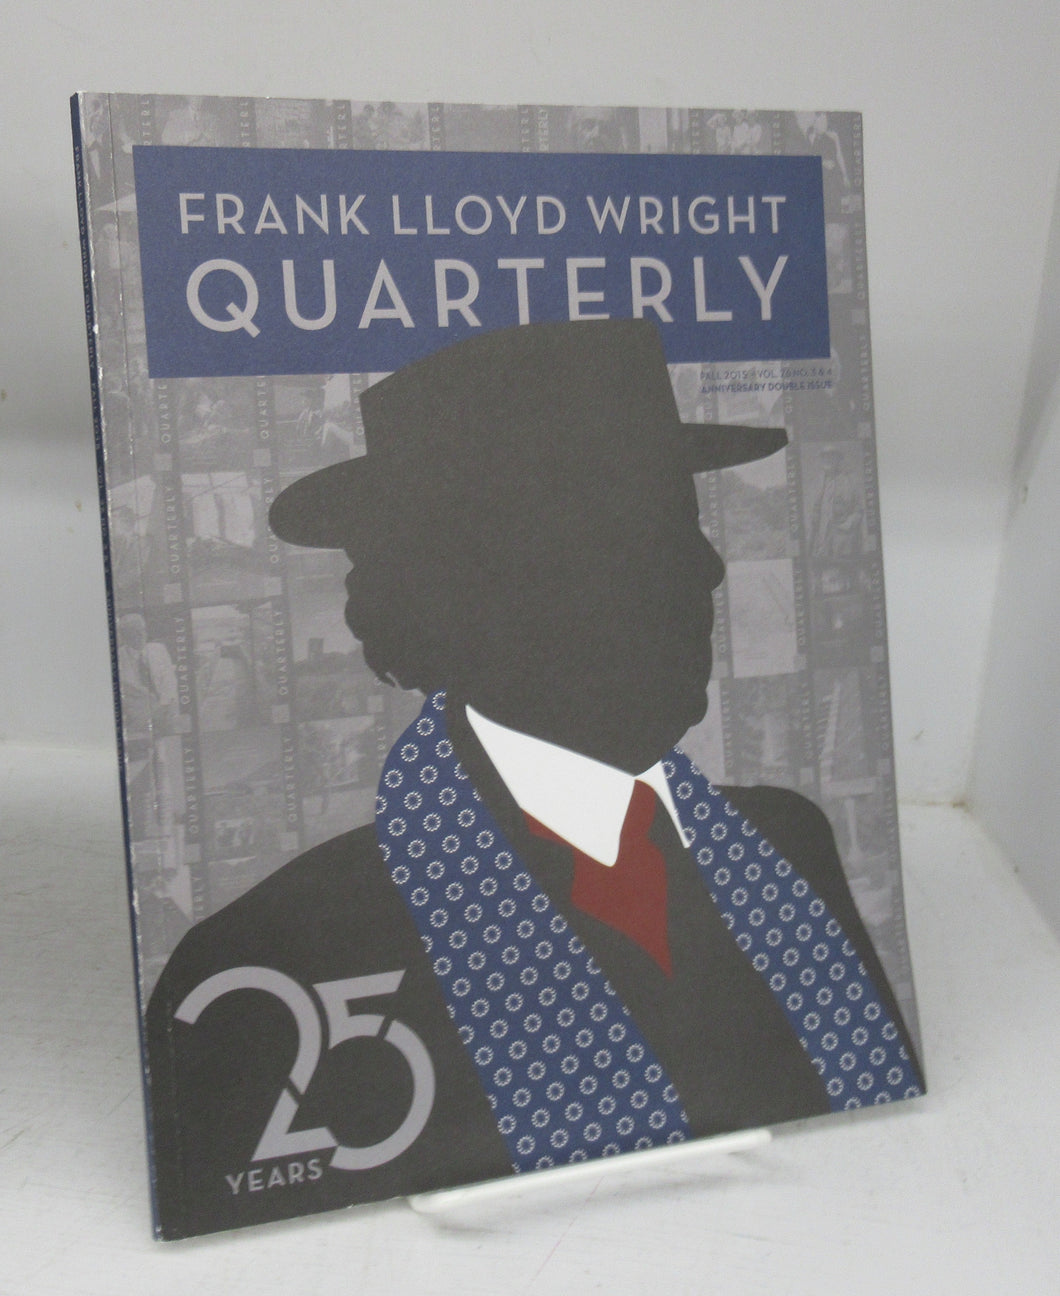 Frank Lloyd Wright Quarterly, Fall 2015